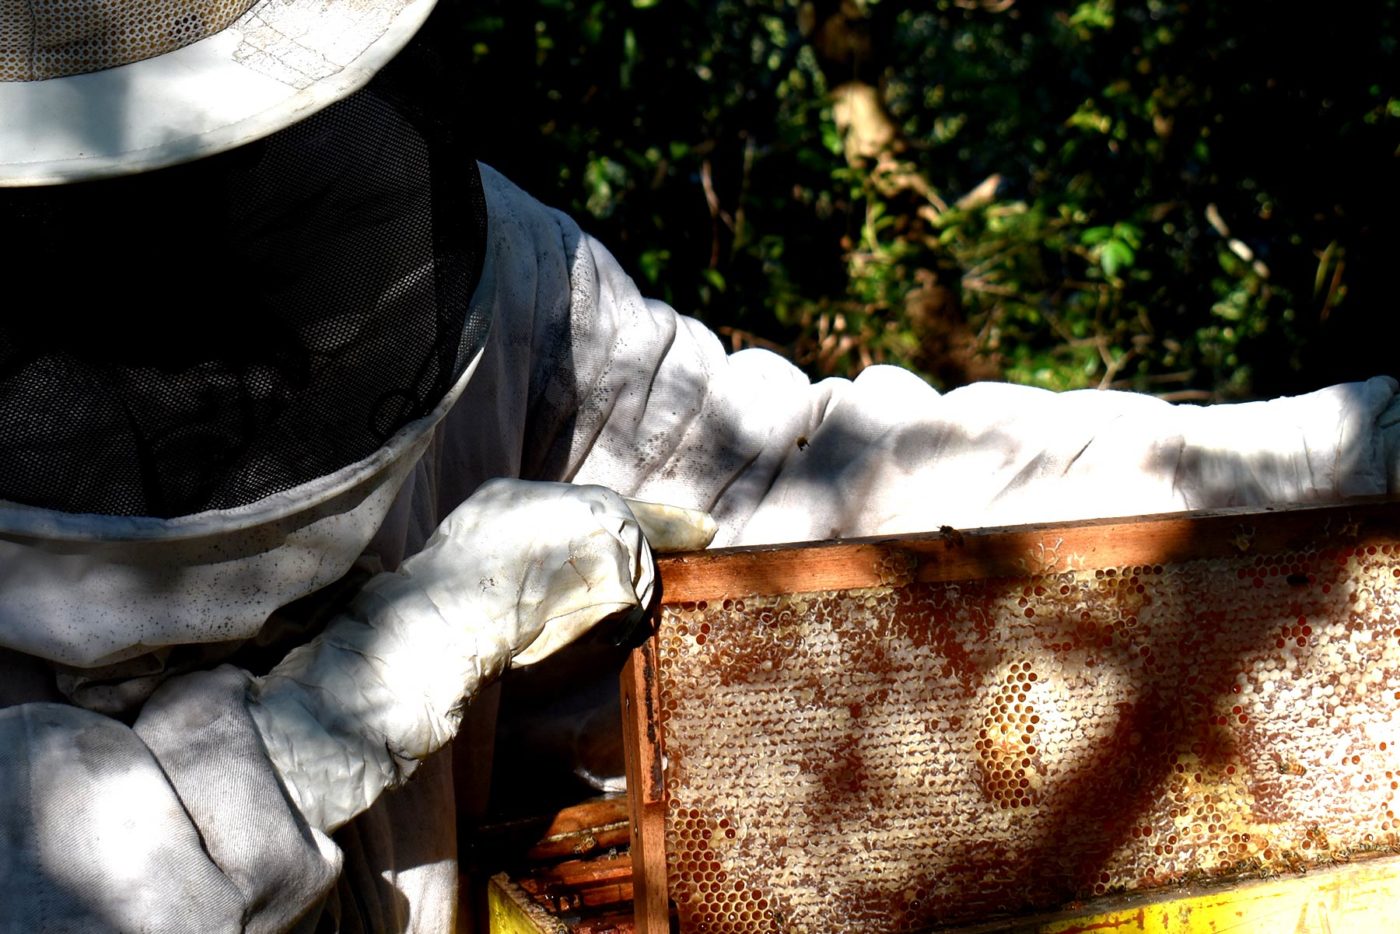 Loja do MEL: Comprar mel puro direto do apiário!